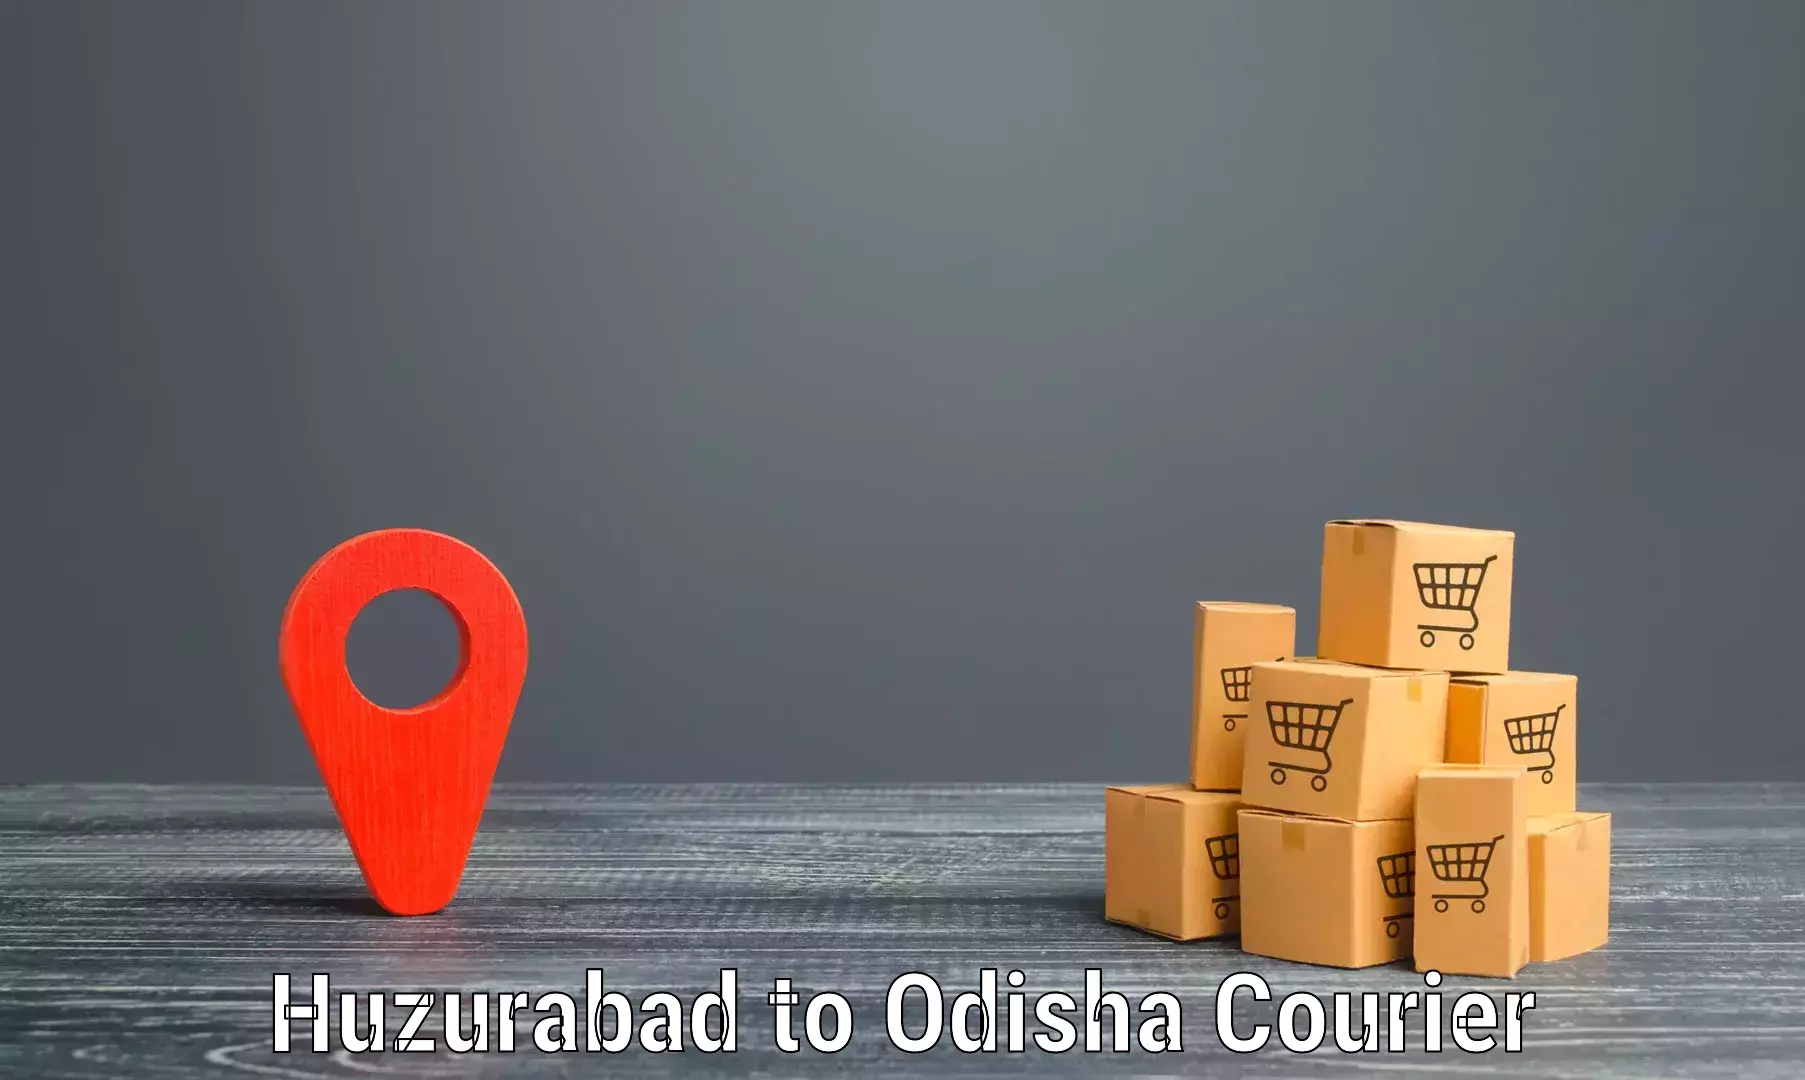 Comprehensive freight services Huzurabad to Talcher